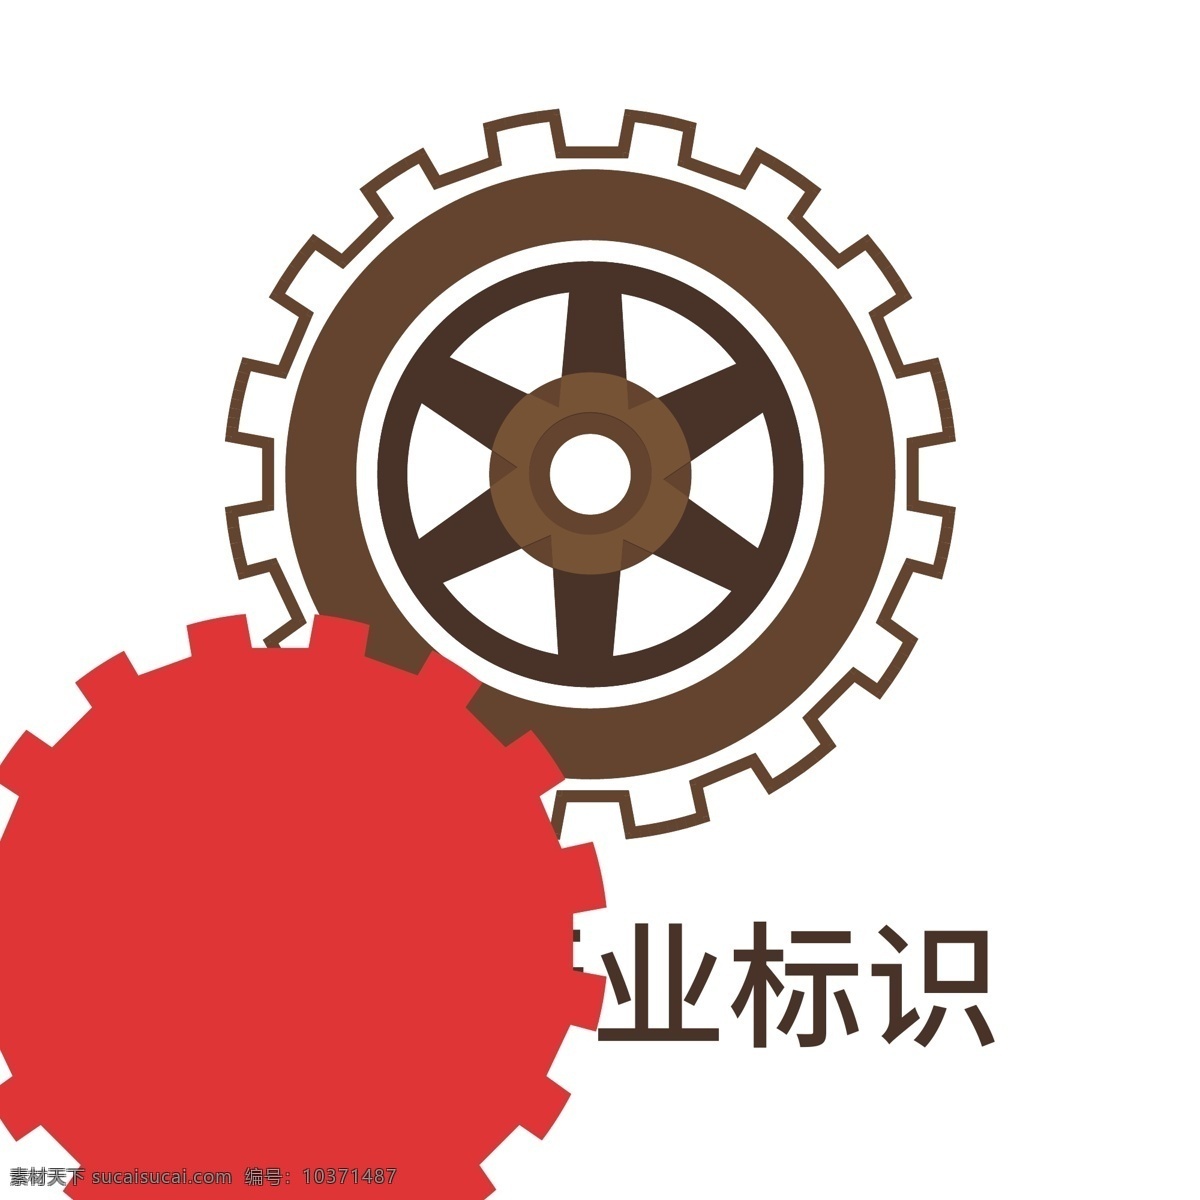 机械 企业 标识 logo 机械logo 机械企业标识 机械标识 机械企业 企业logo